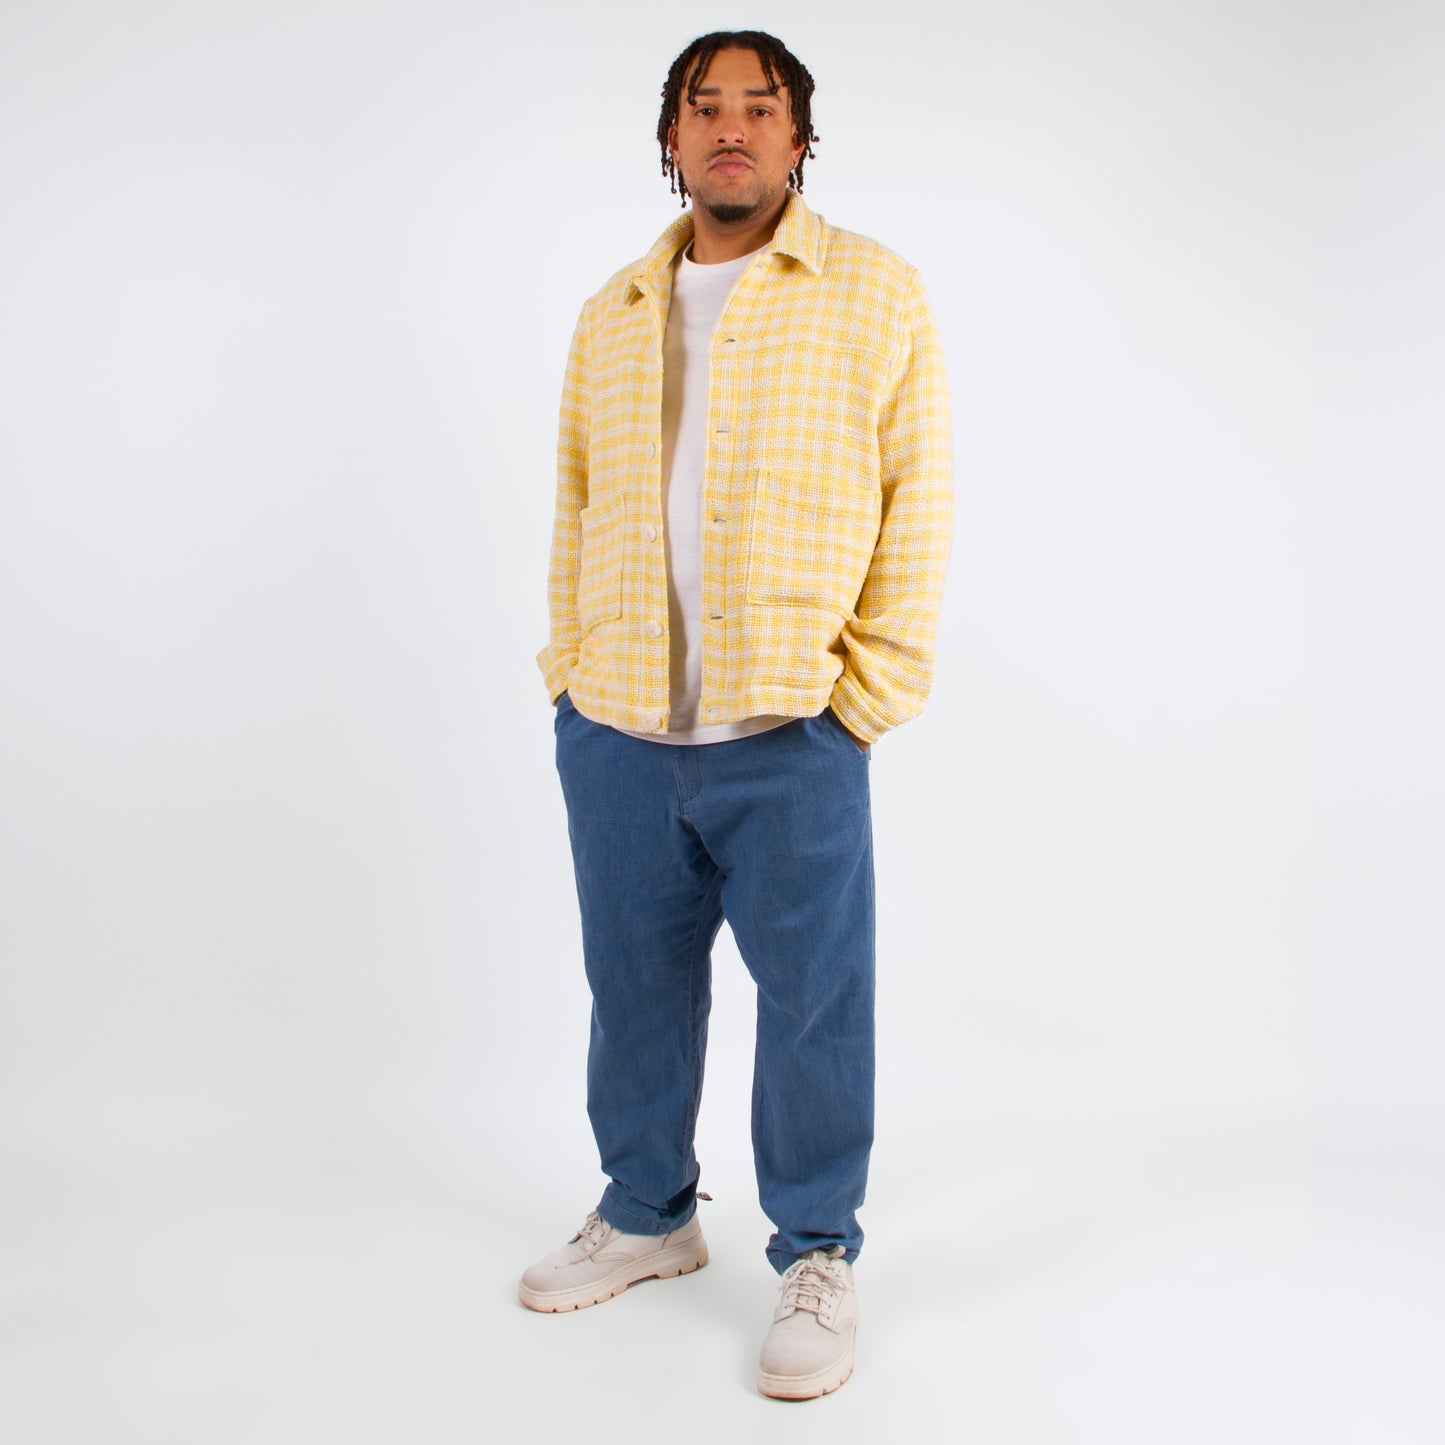 lucewear: homme portant une veste jaune à carreau